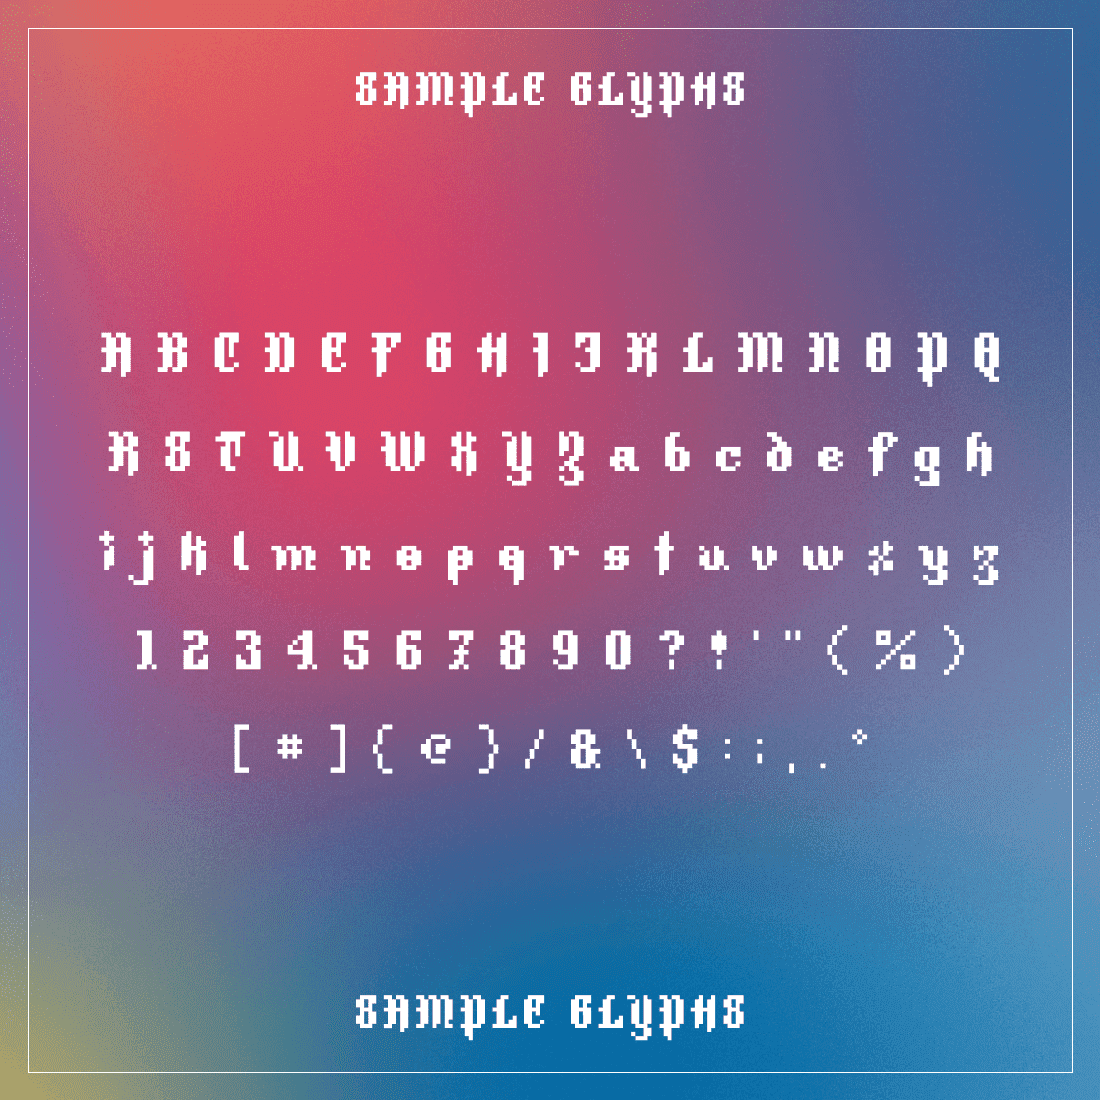 Helpbringer Pixel Font Sample Glyphs.